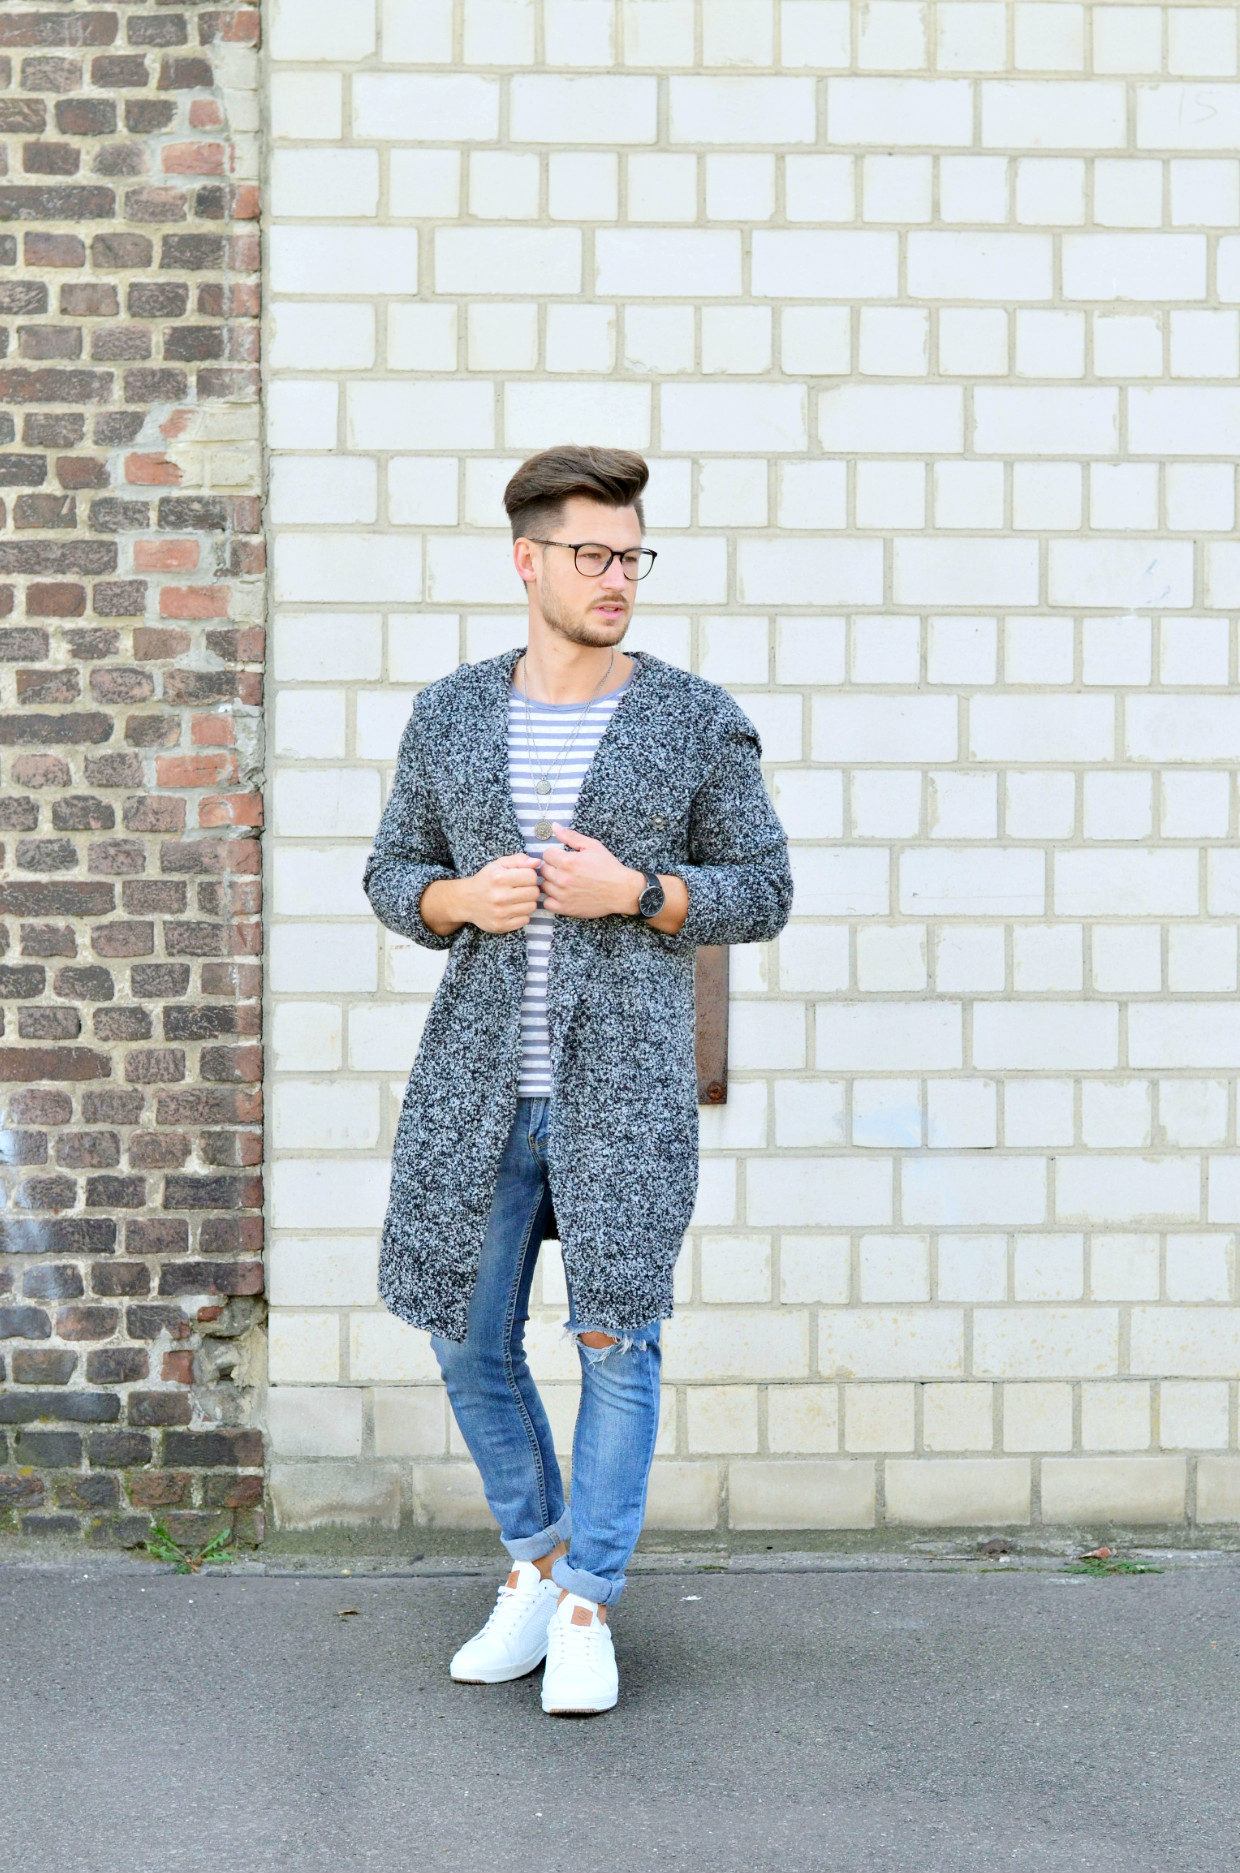 Männer-Blog-Berlin-Outfit-Cardigan-Jeans-Streifenshirt-Sneaker-Brille